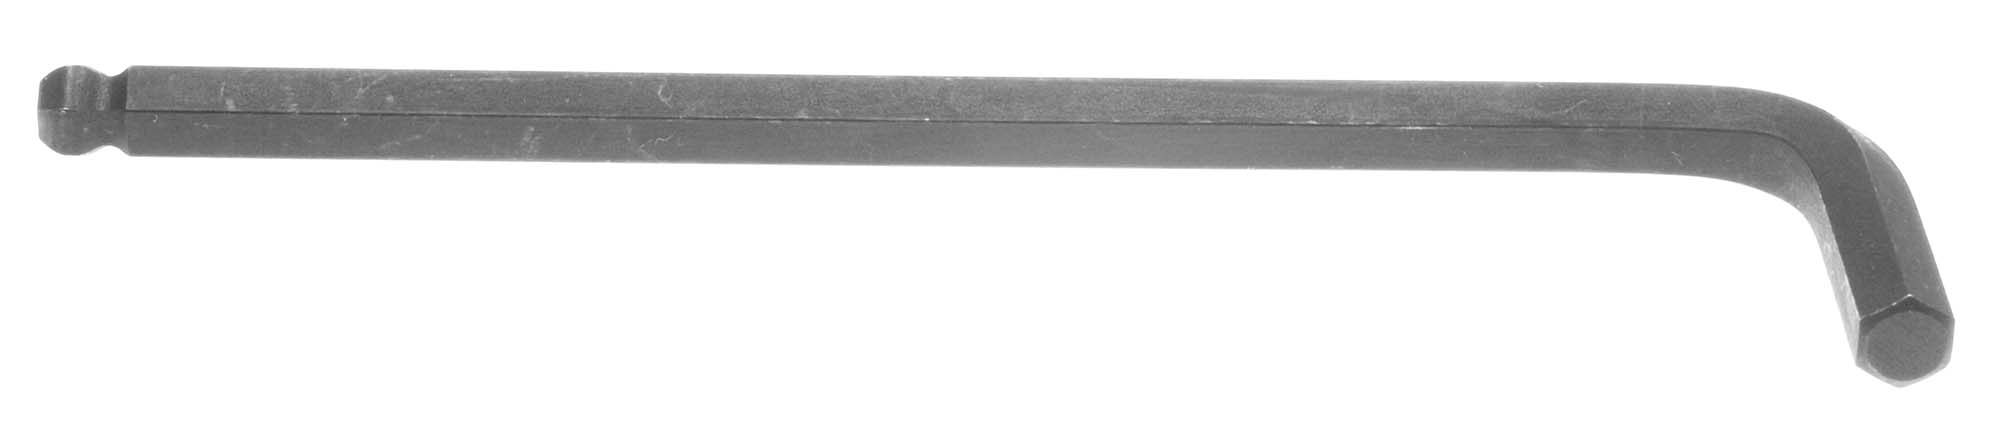 5/64" Bondhus Balldriver L-Wrench Hex Key